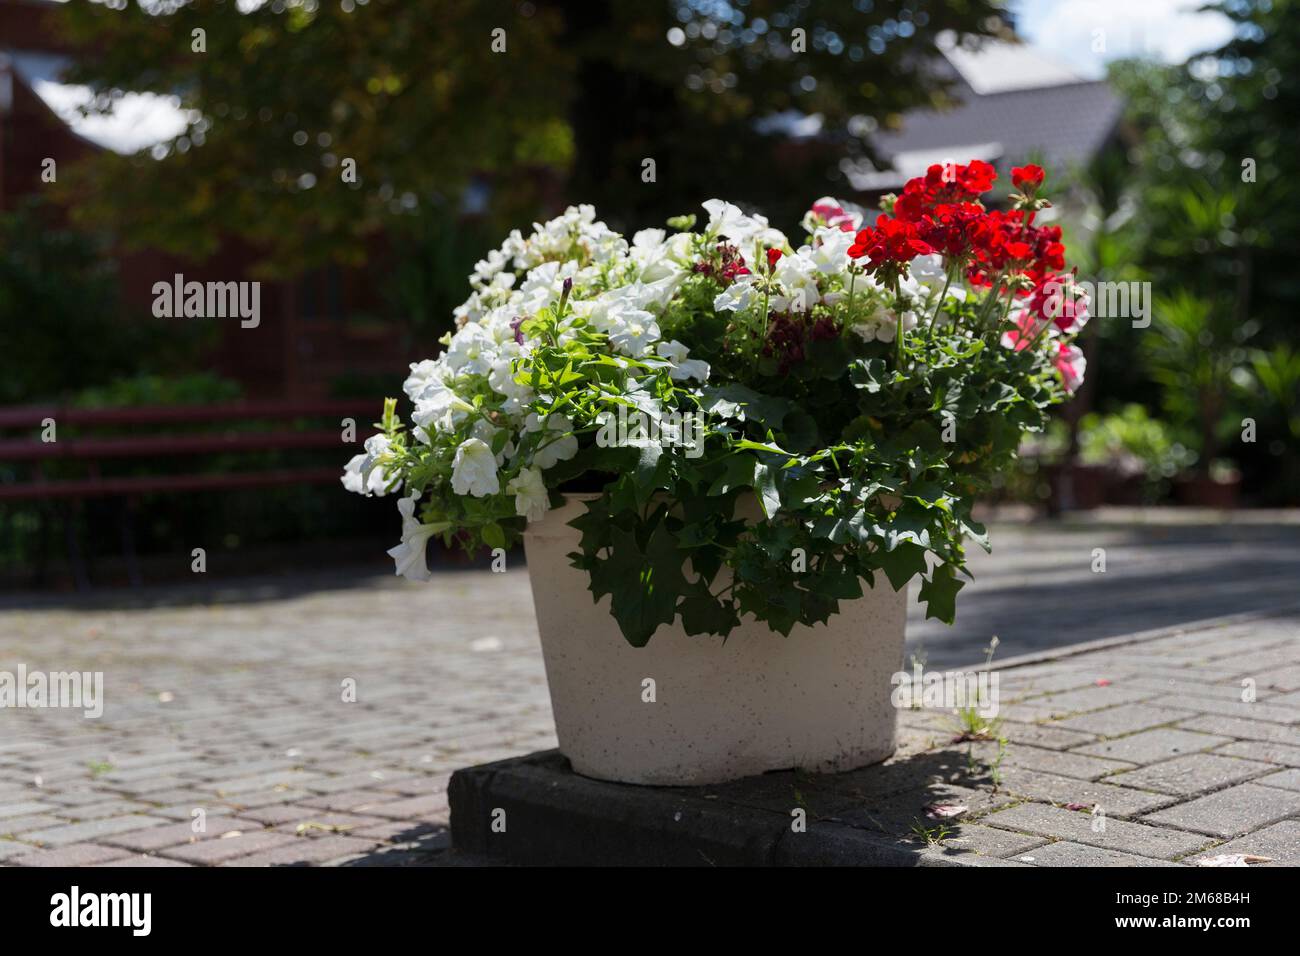 Pétunia fleurit dans un pot dans le jardin - un exemple de jardinage dans le jardin et le parc. pétunia rouge et blanc dans un pot dans le parc au milieu des pavés Banque D'Images